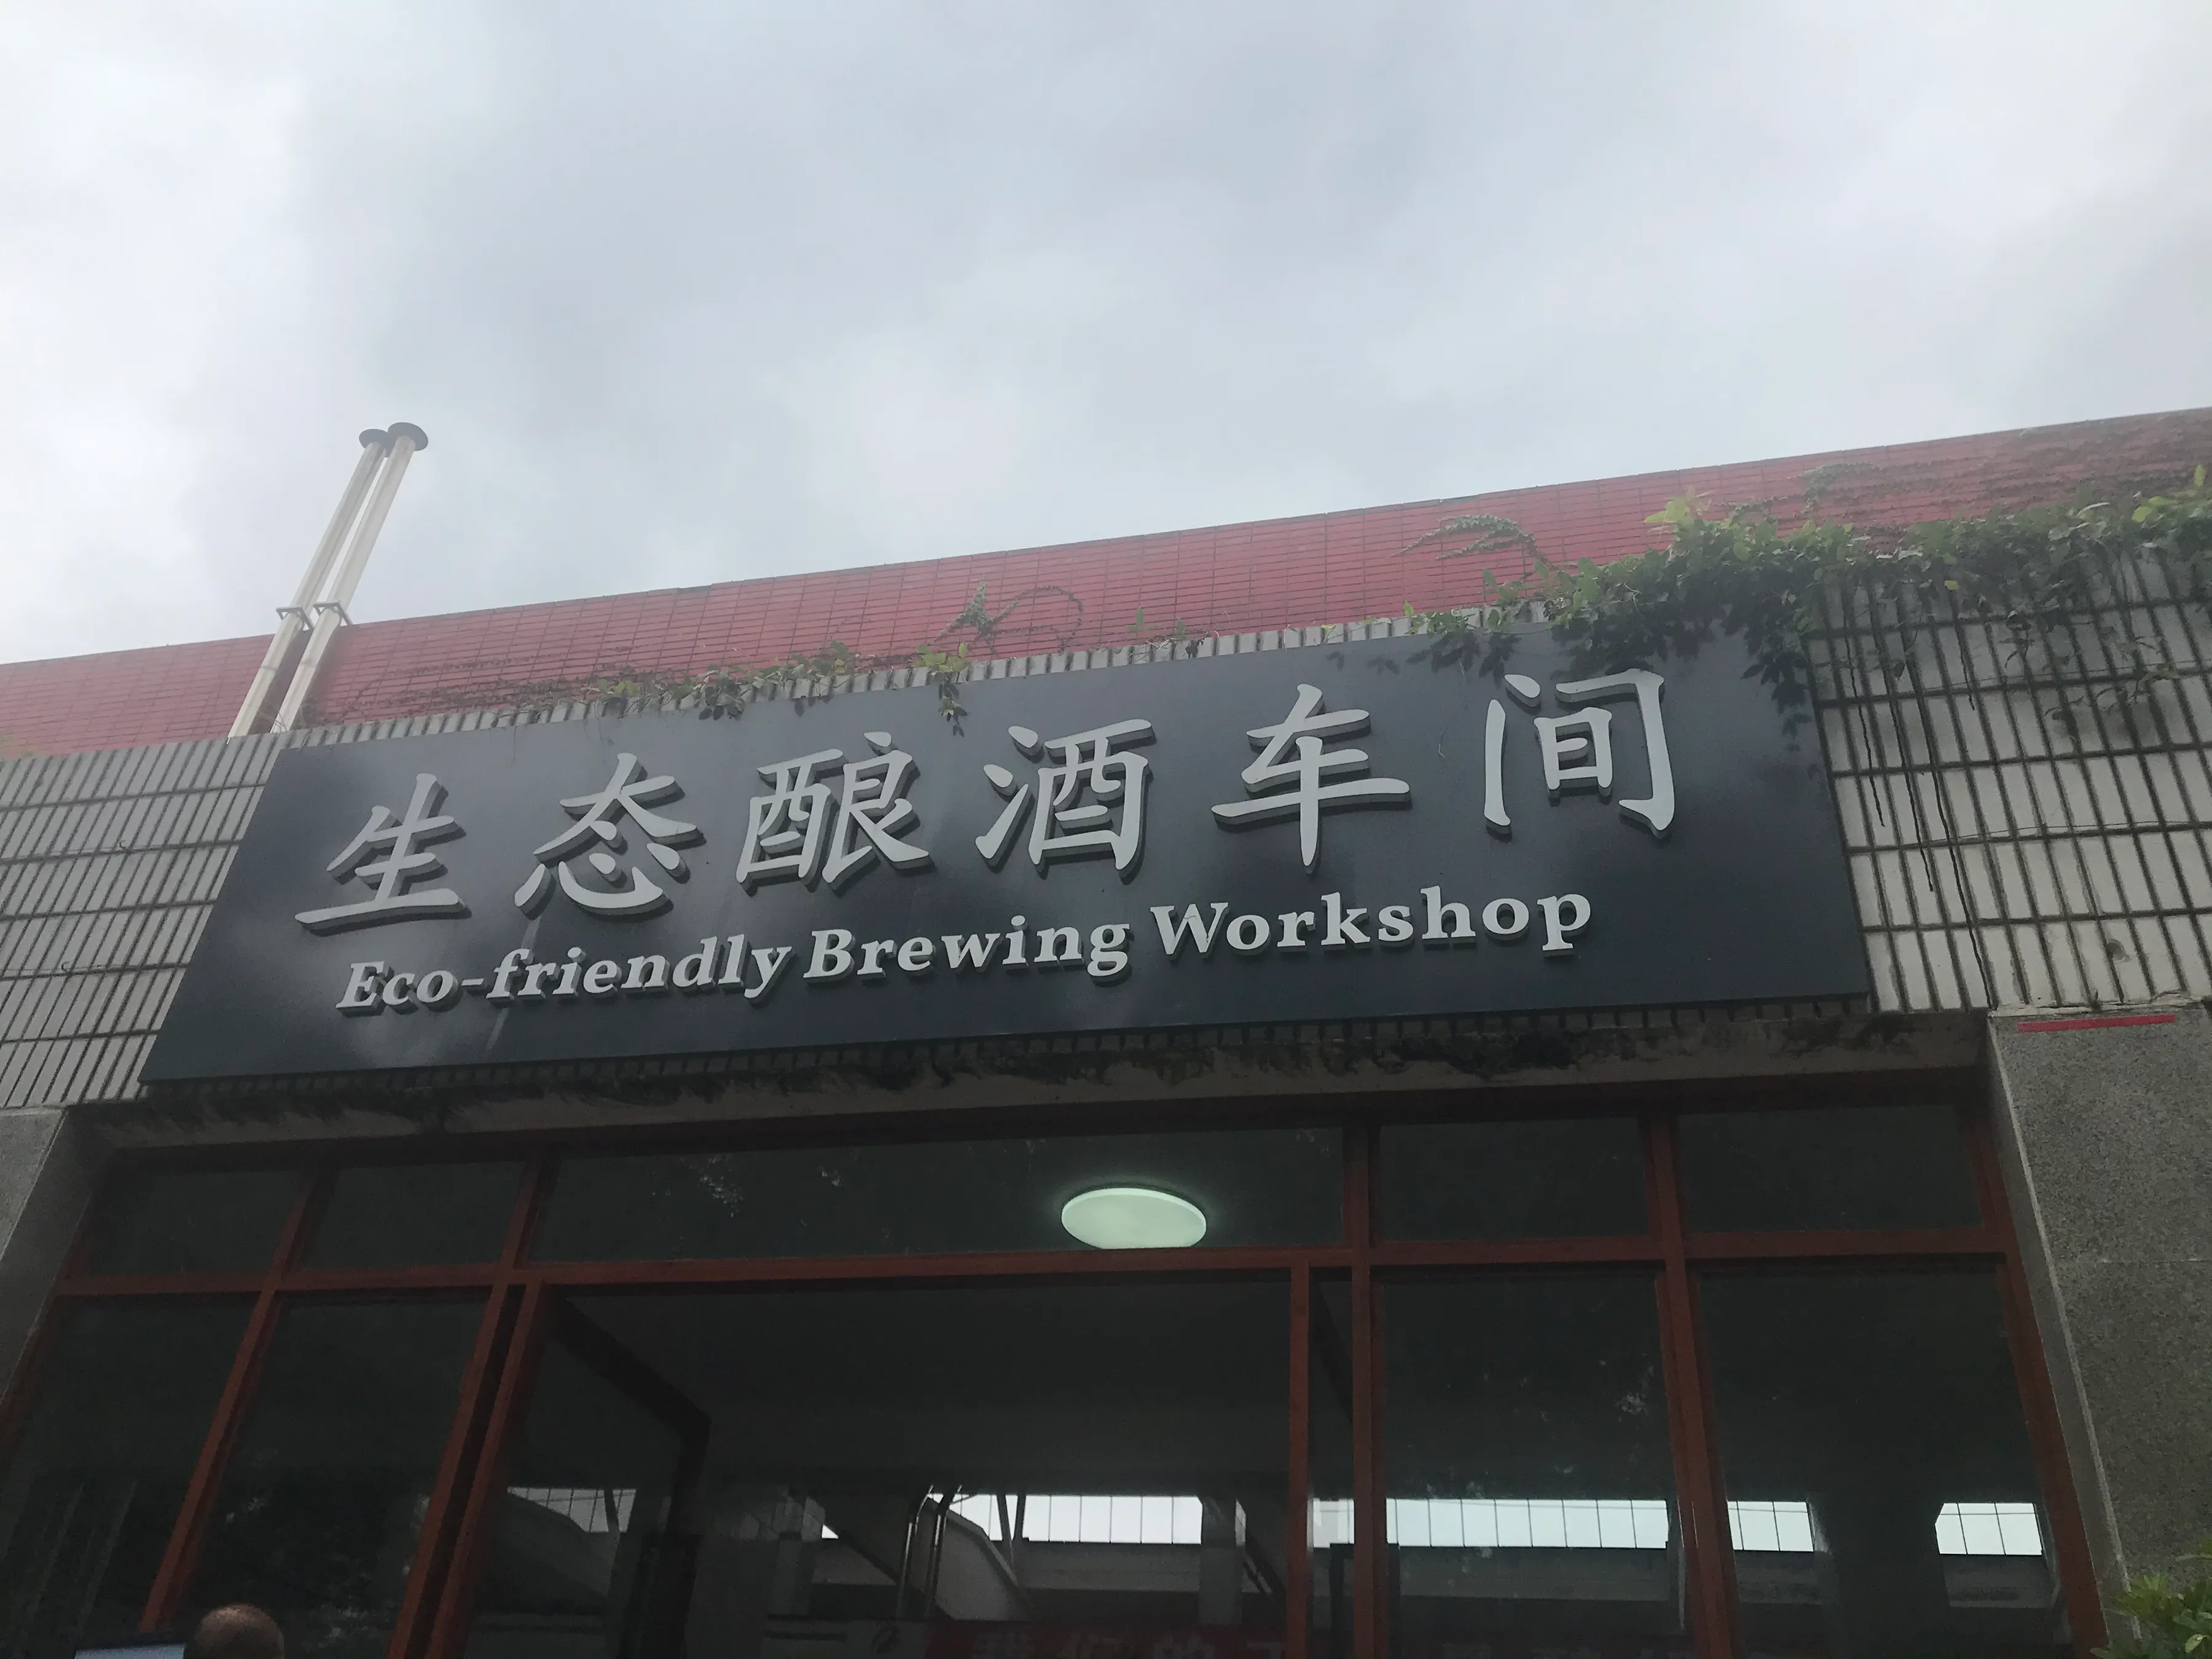 沱牌舍得酒业被四川省食品科学技术学会授予“副理事长单位”